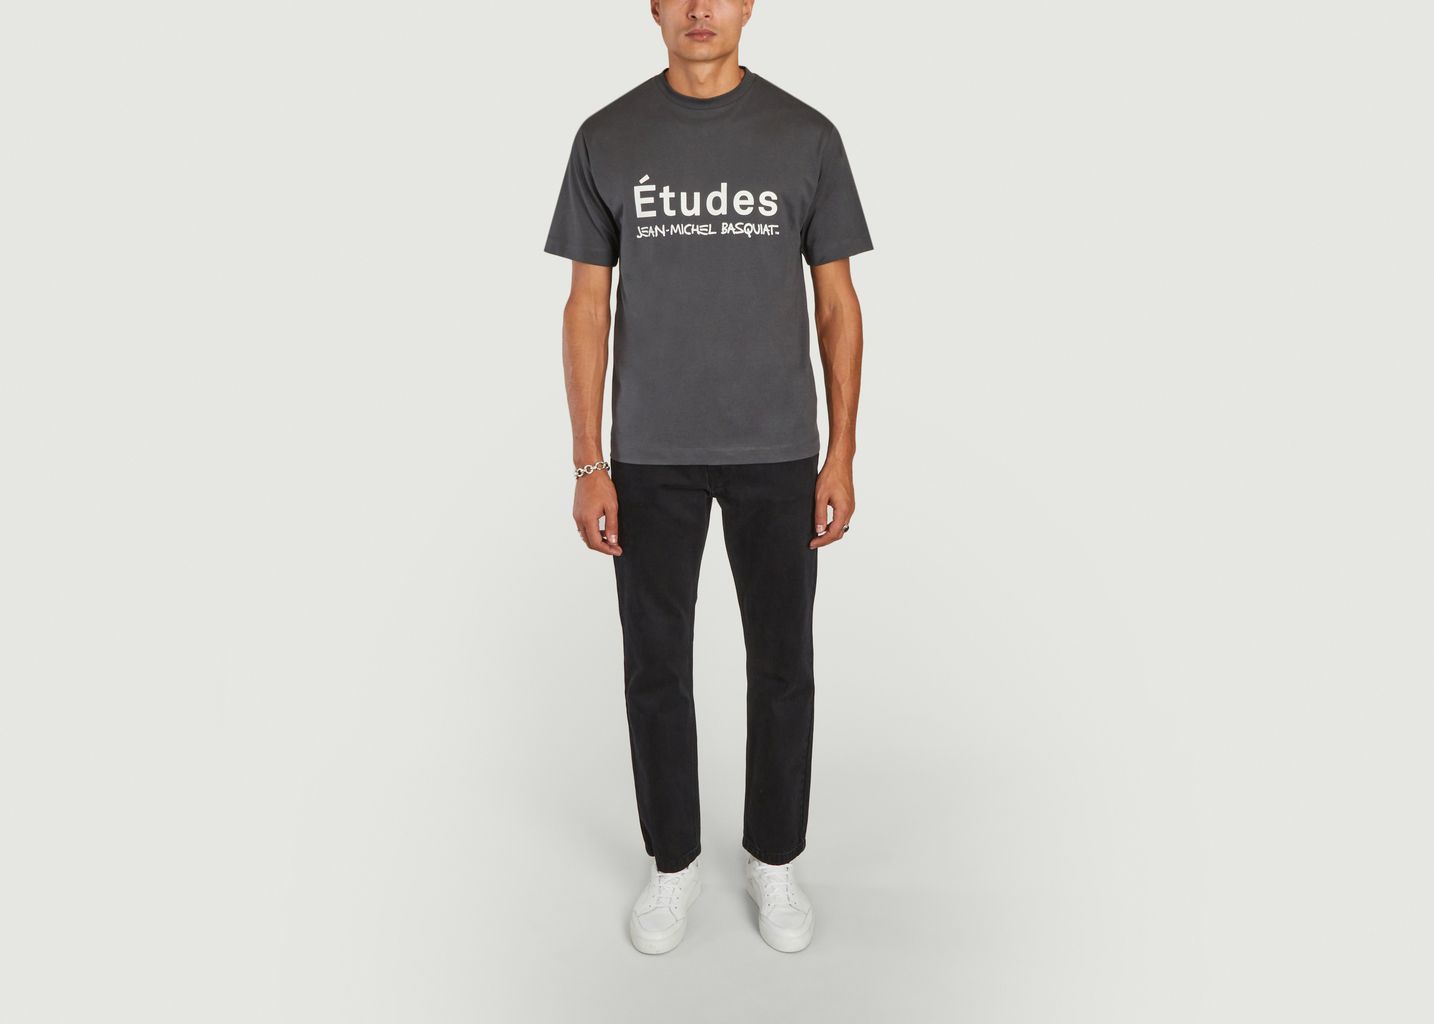 Études Studio x Basquiat T-shirt - Etudes Studio